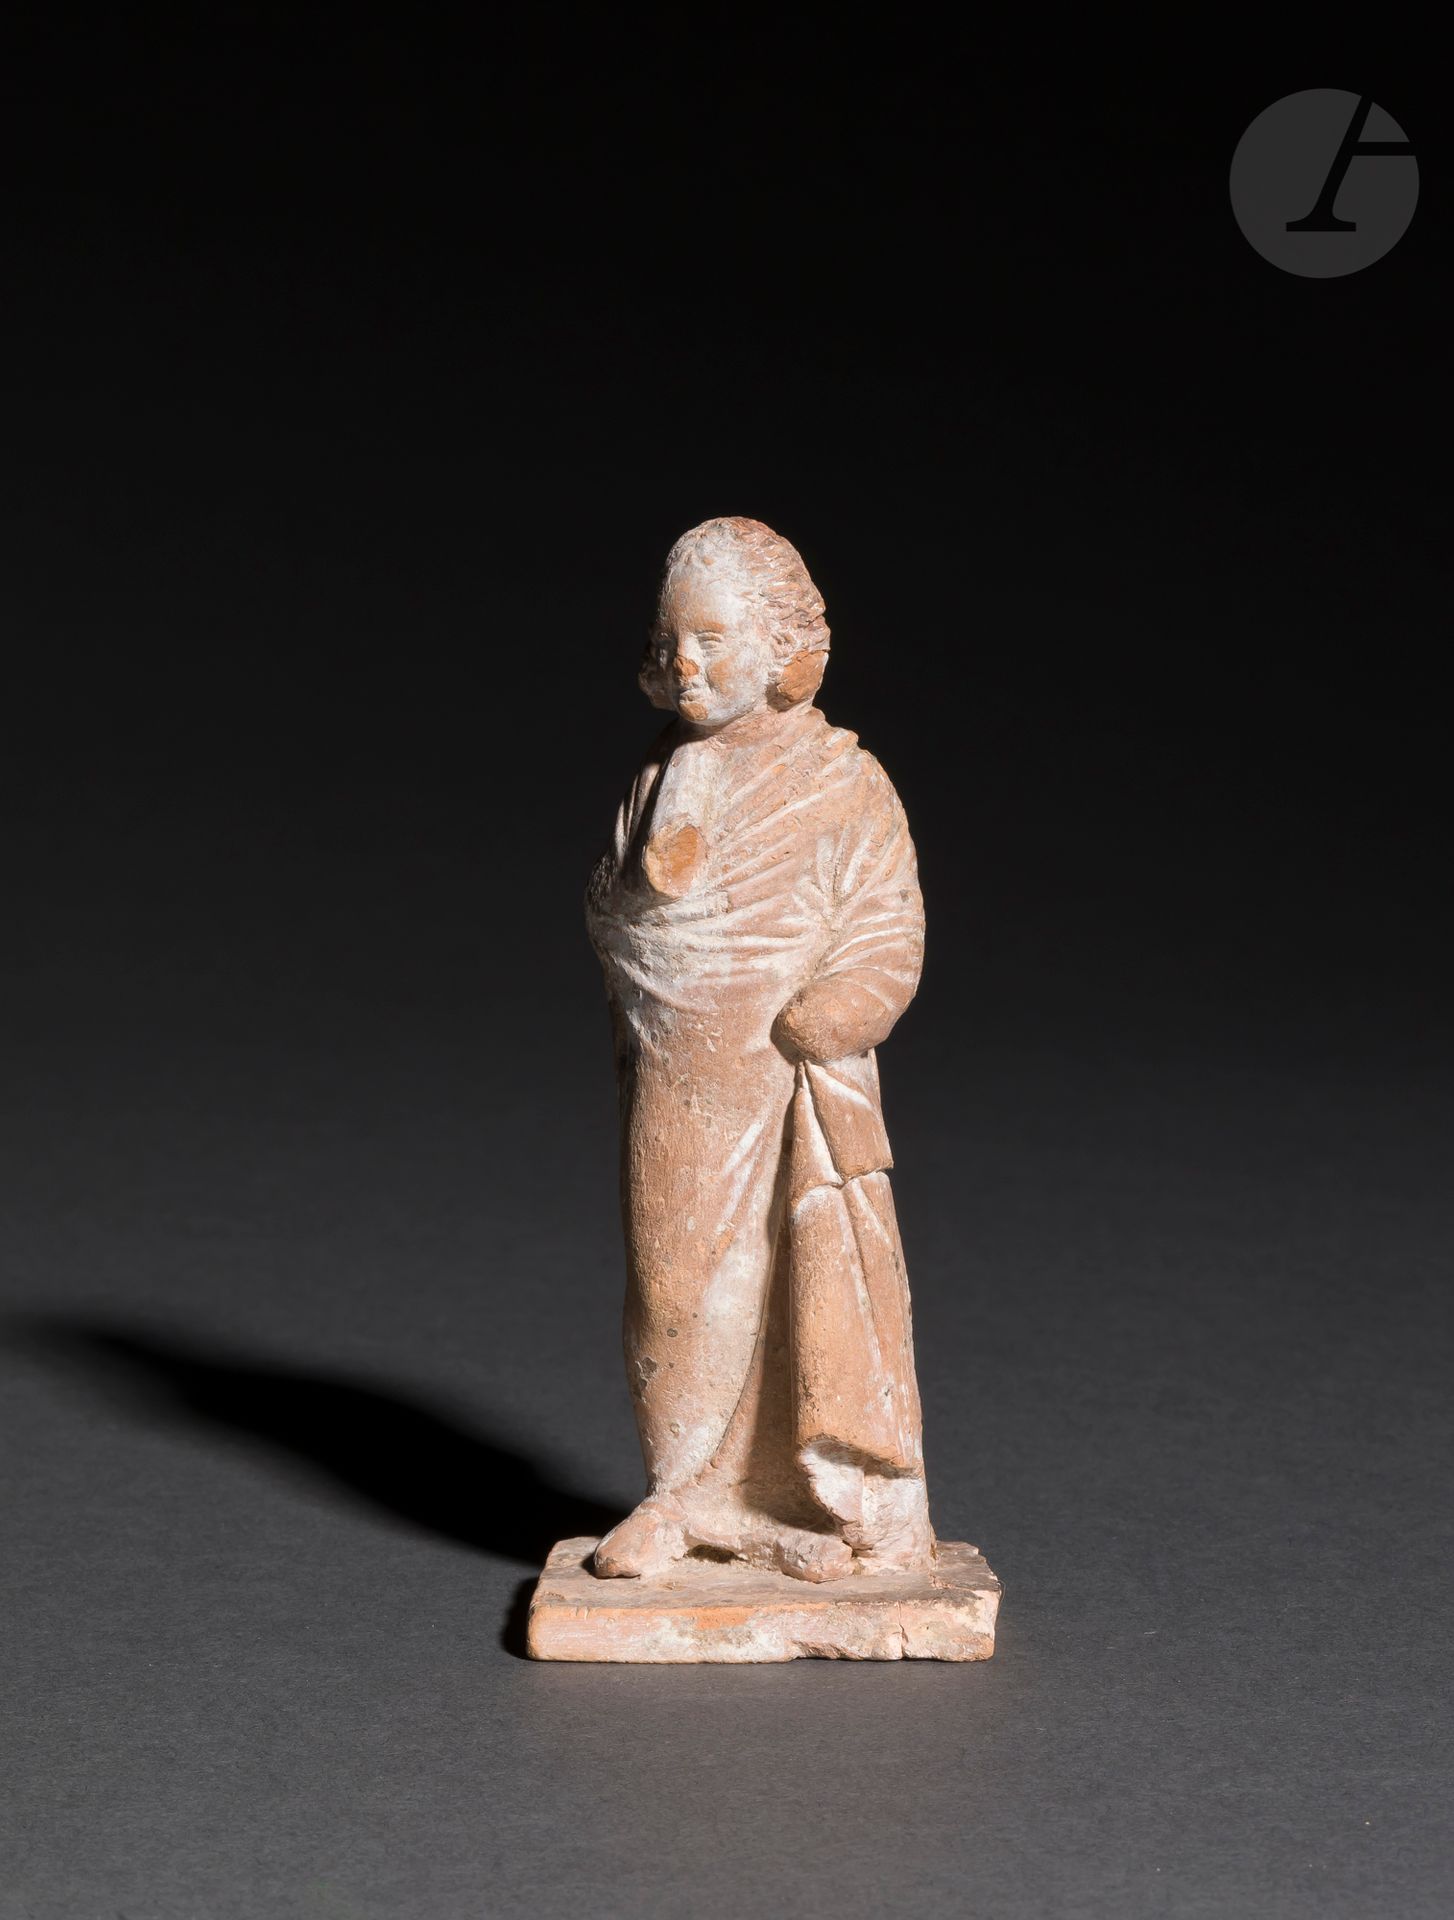 Null 一个小女孩的雕像，披着他的衣服。
陶器。有些部件丢失，包括一只手。断裂和胶合的牌匾。有胶水的痕迹。 
波欧提亚，希腊化时期，塔纳格拉，公元前3世纪 
&hellip;